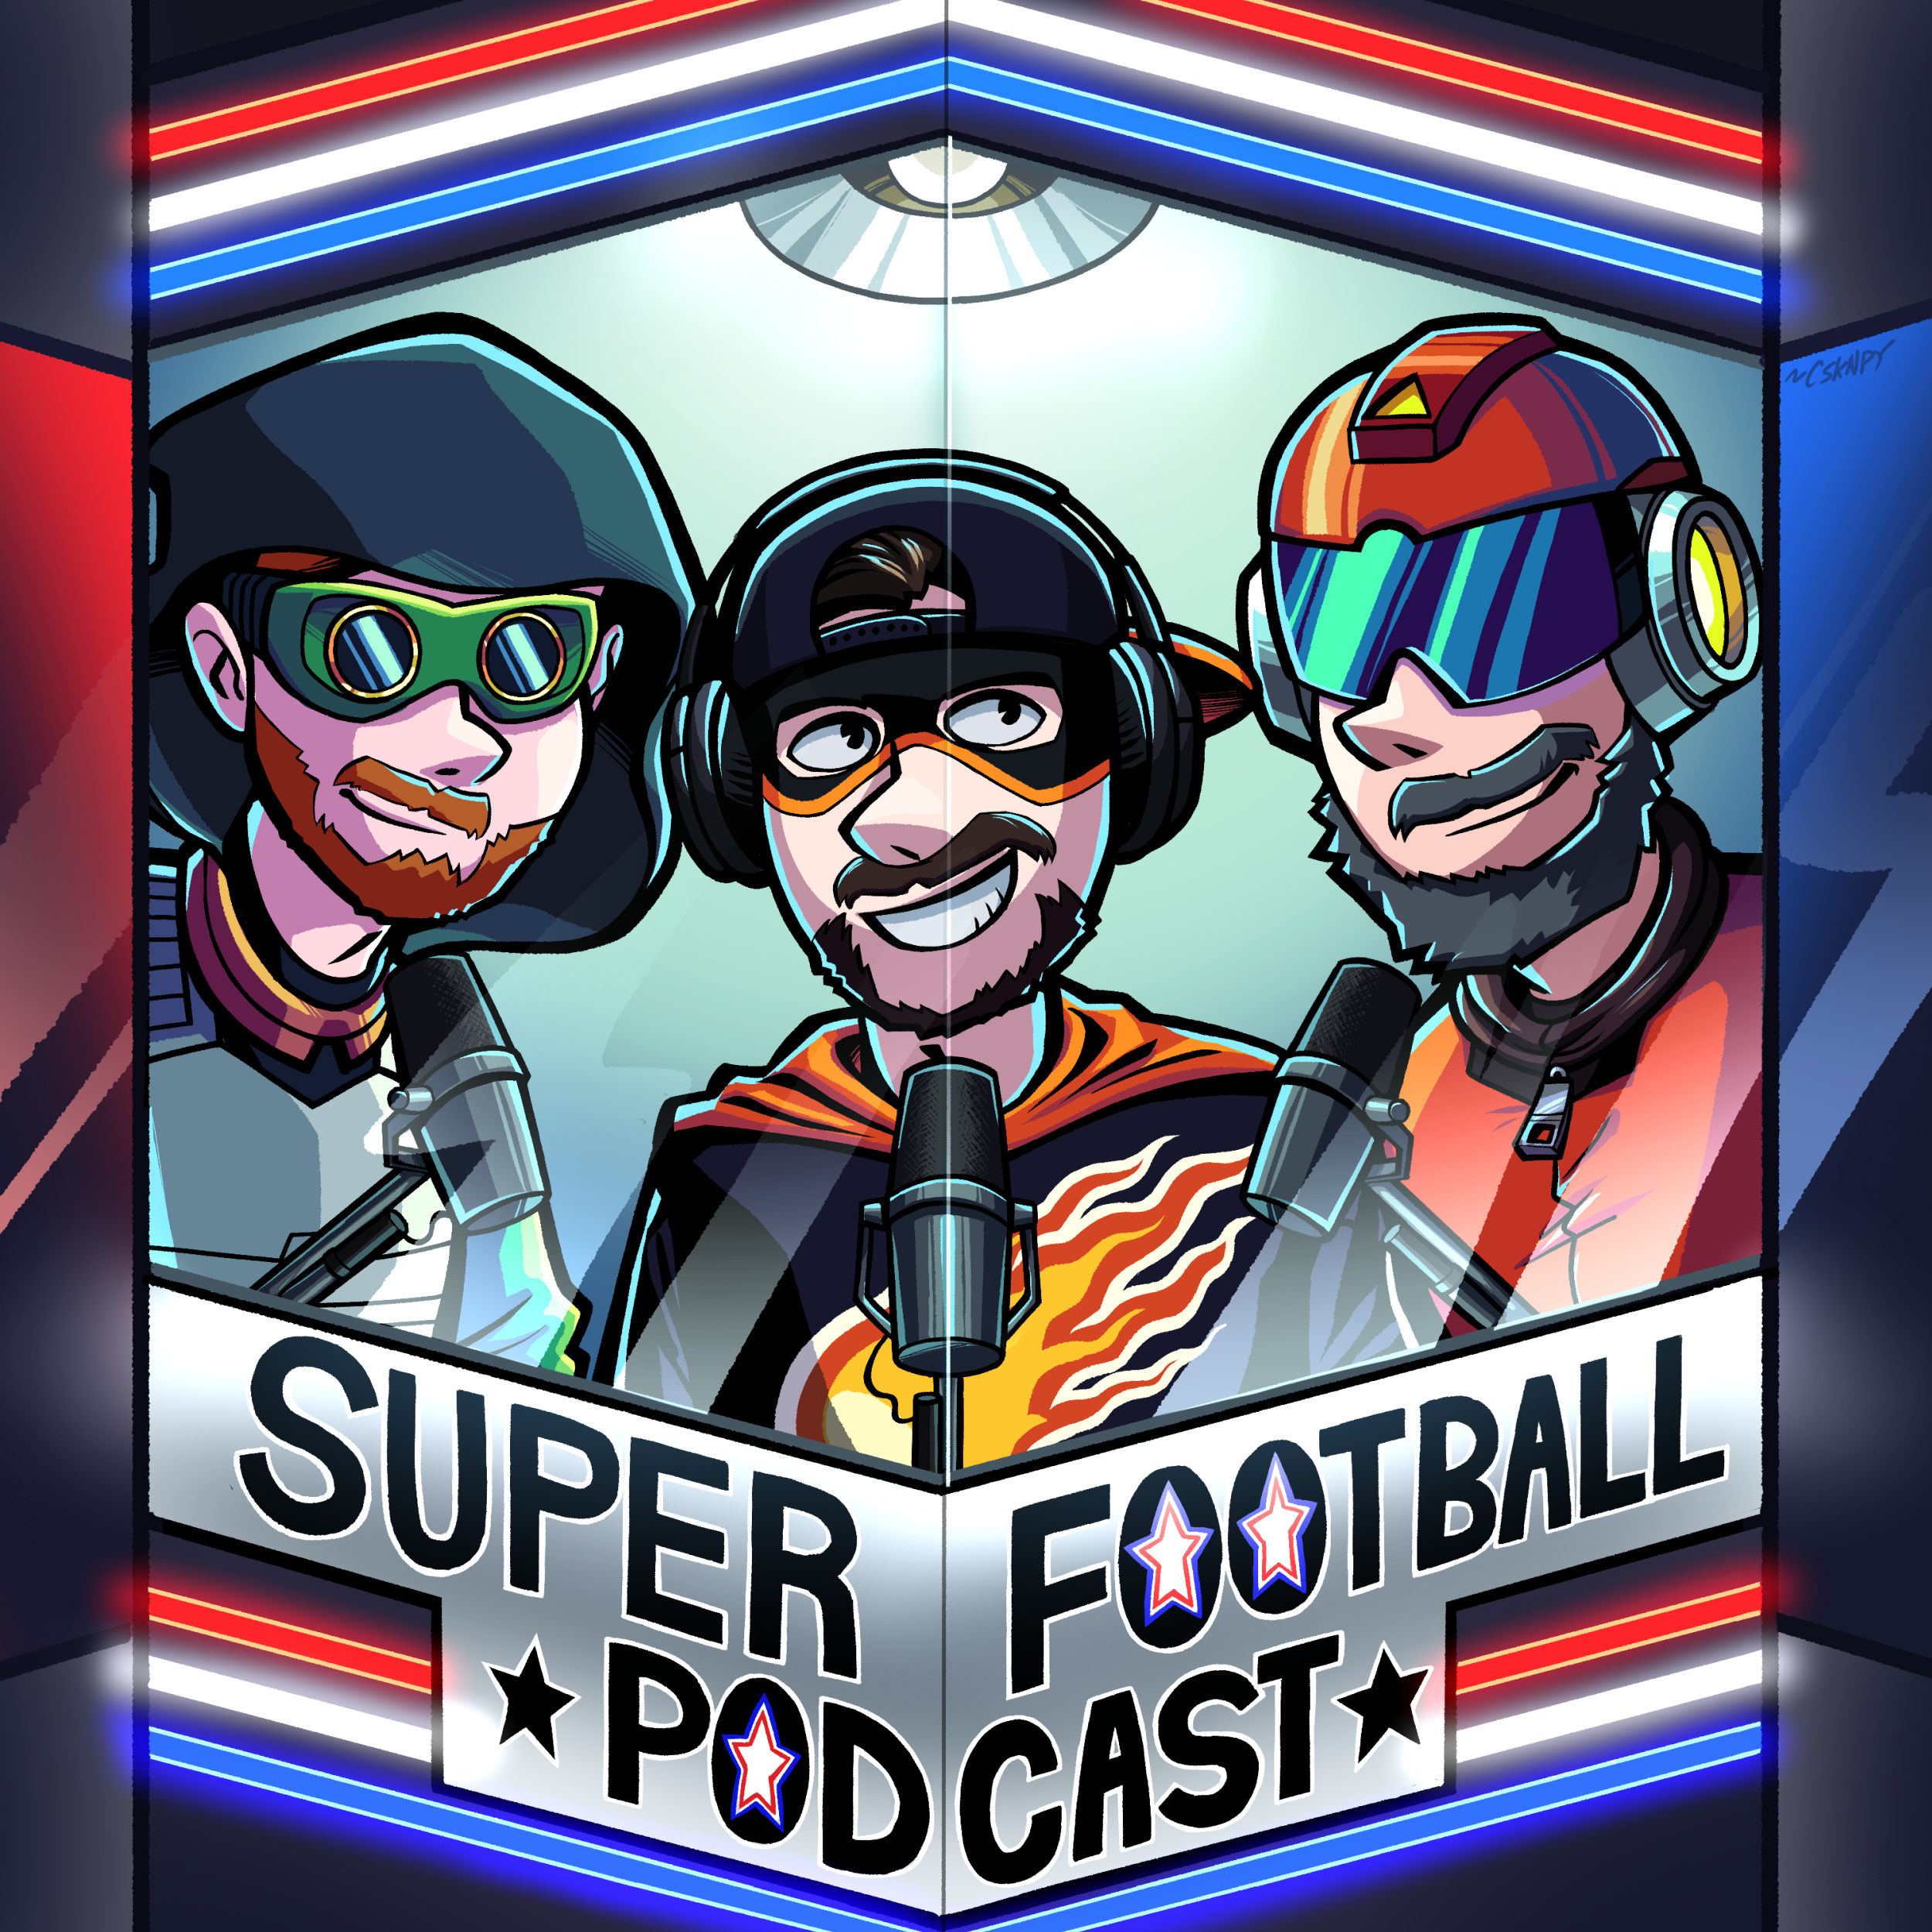 Artwork for Football Super Podcast